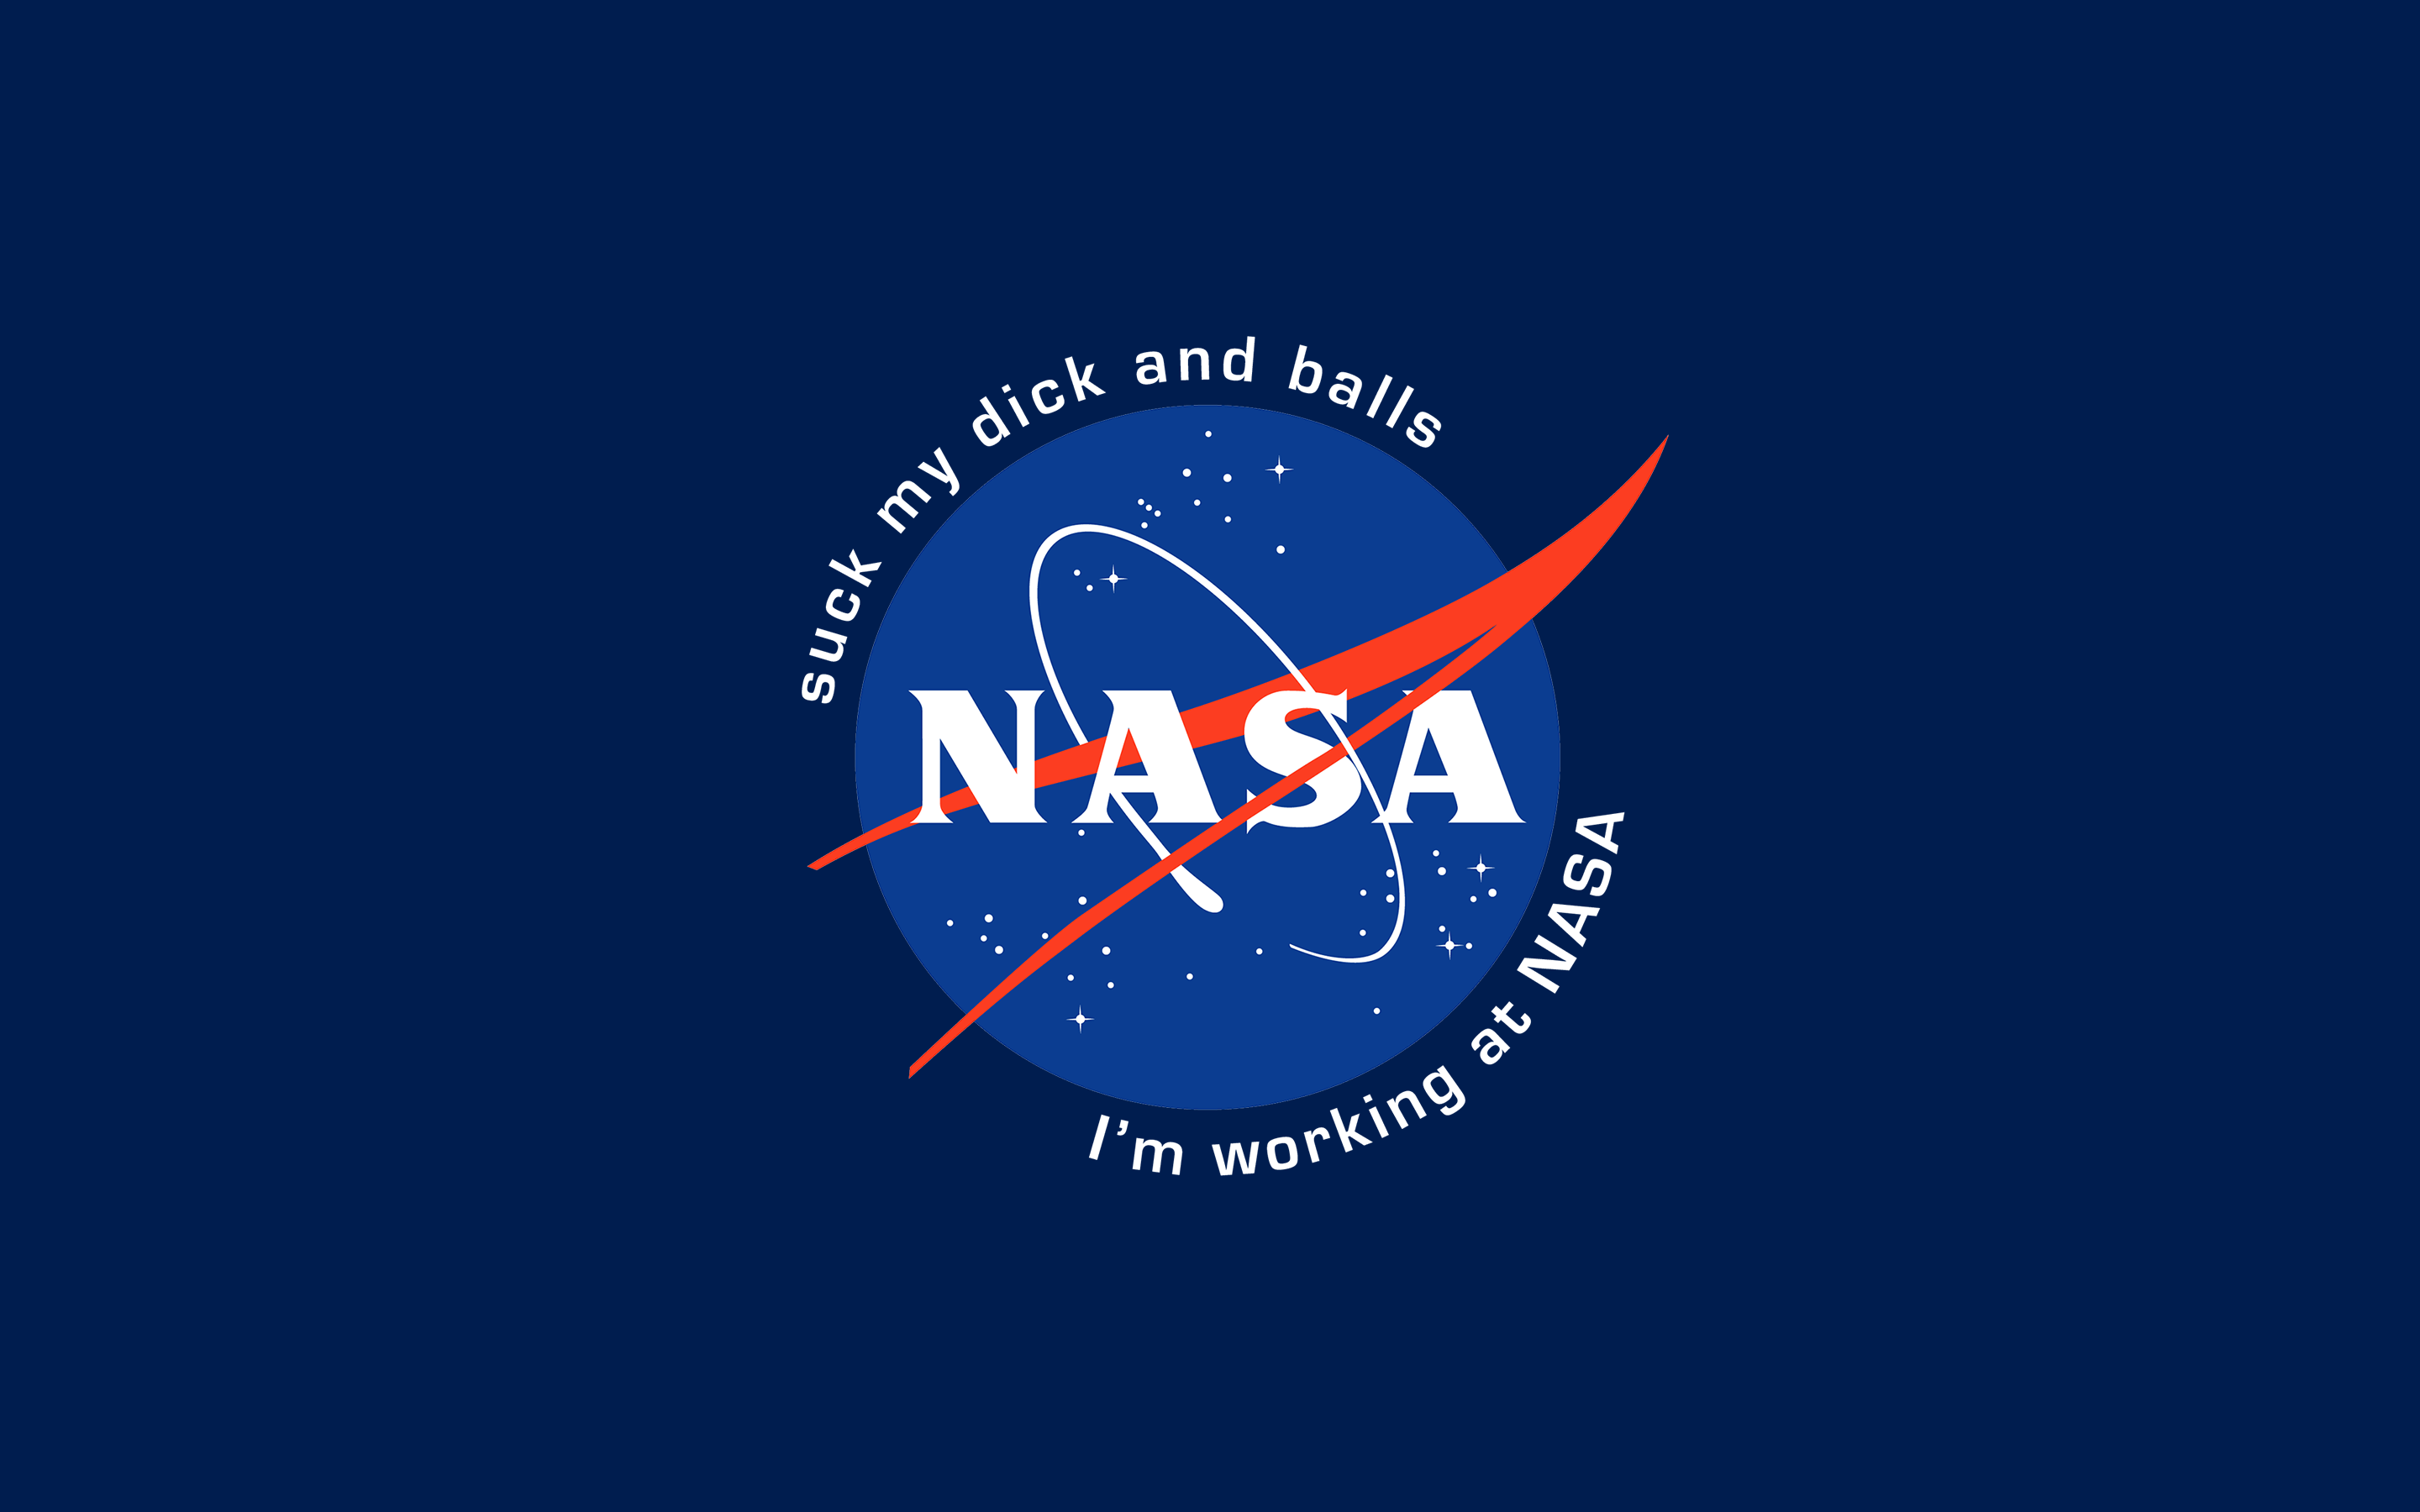 NASA wallpaper 2880x1800 Nasa wallpaper Nasa Supreme iphone